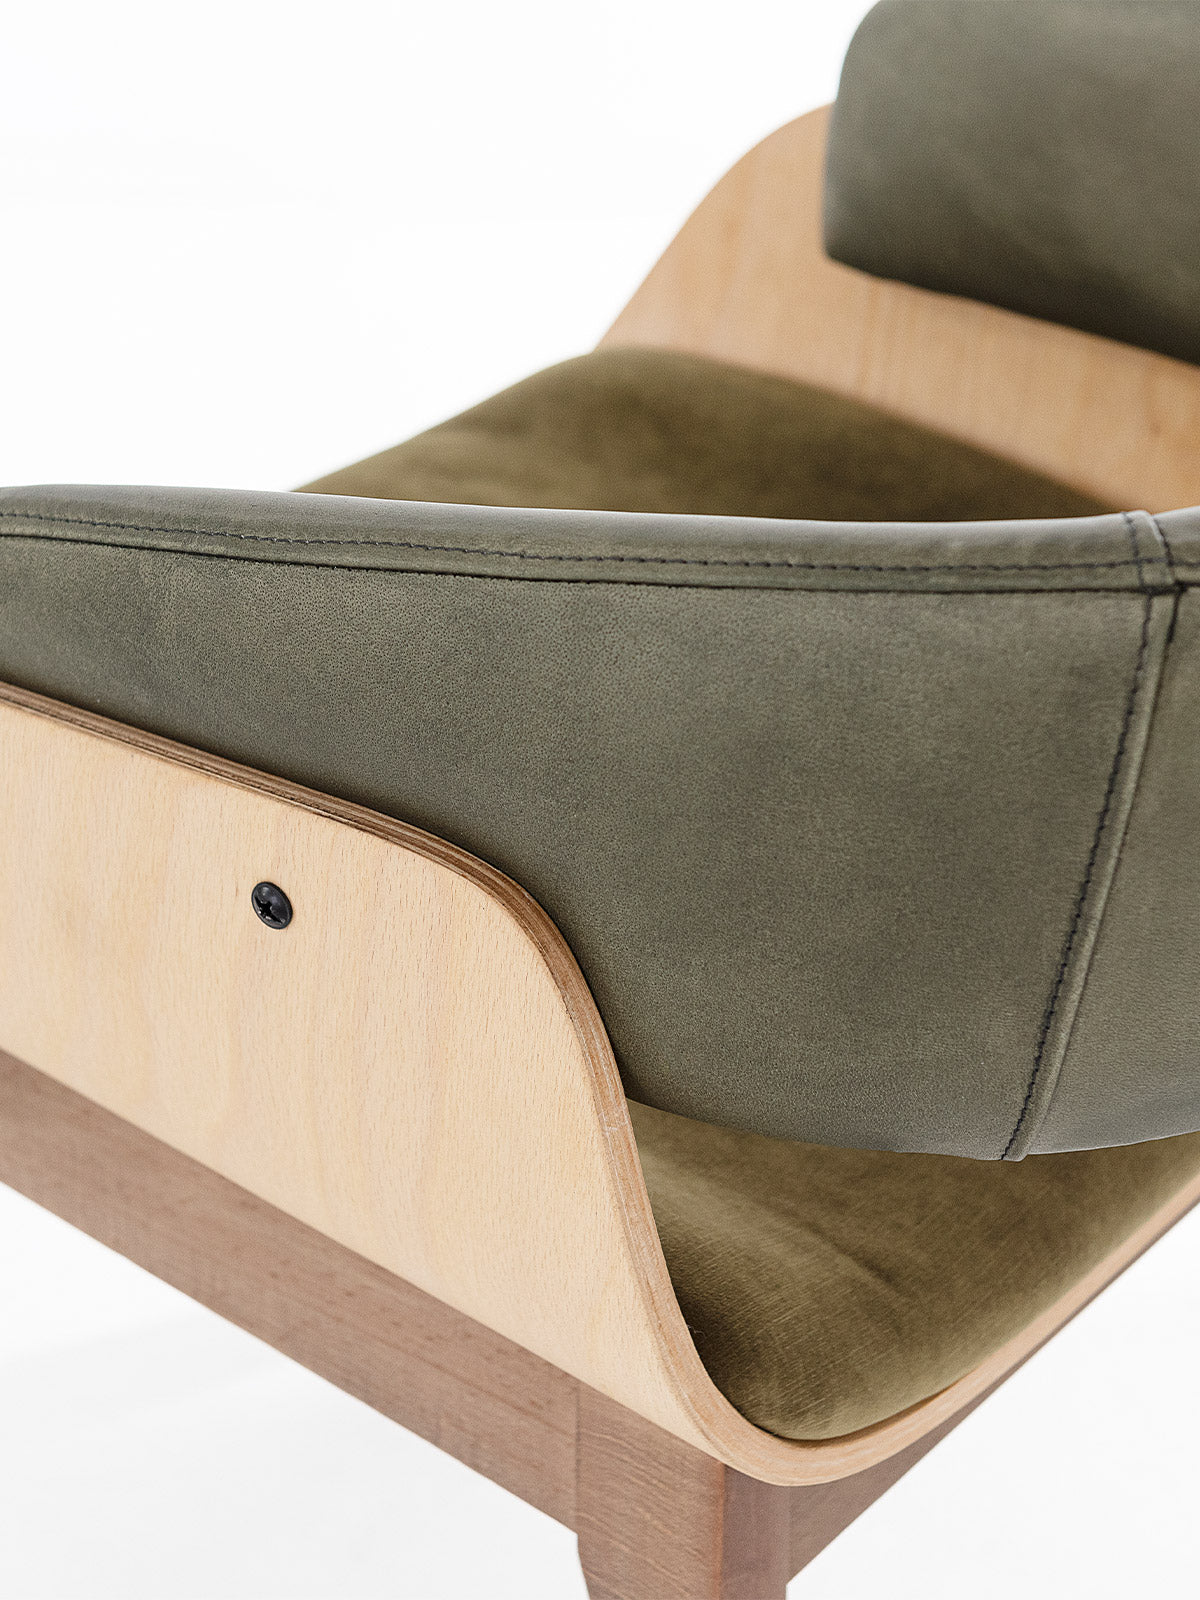 Grüner Stuhl mit einzigartigem Design ✔ Modell BRANDO